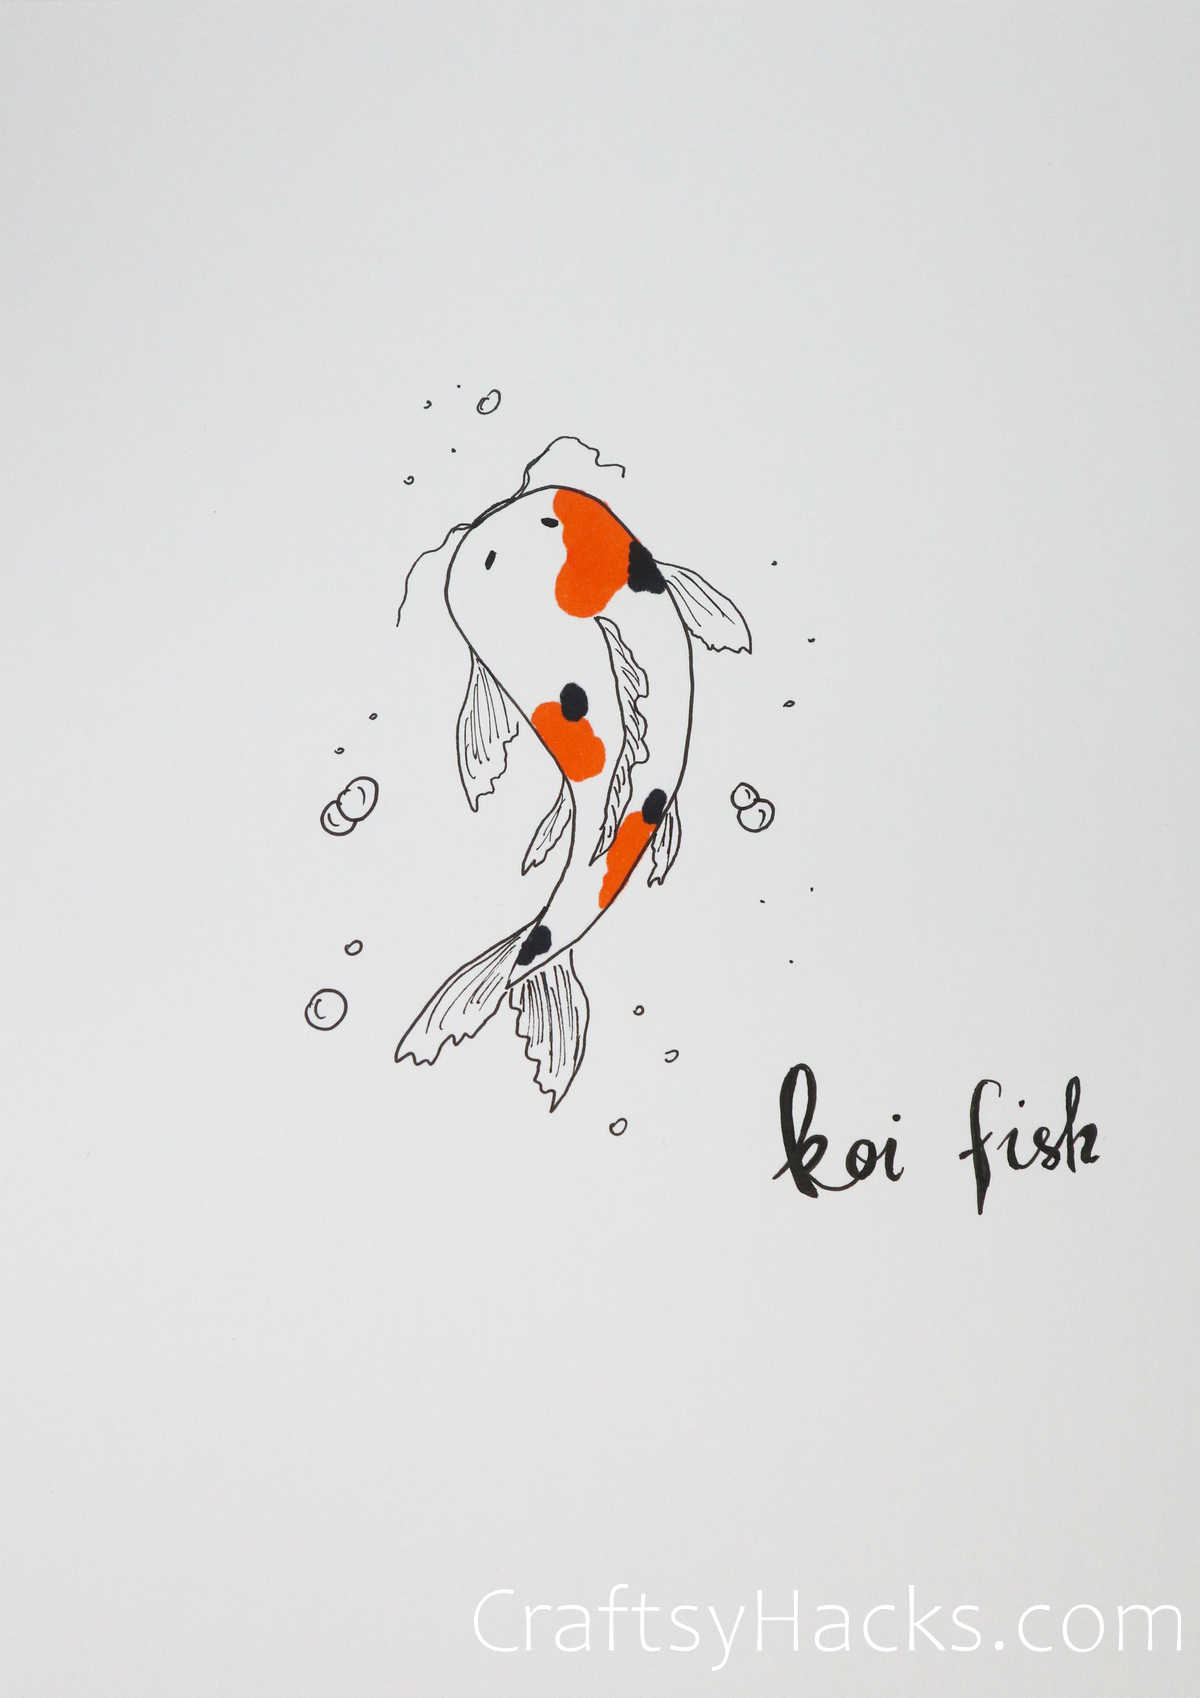 koi fish drawing